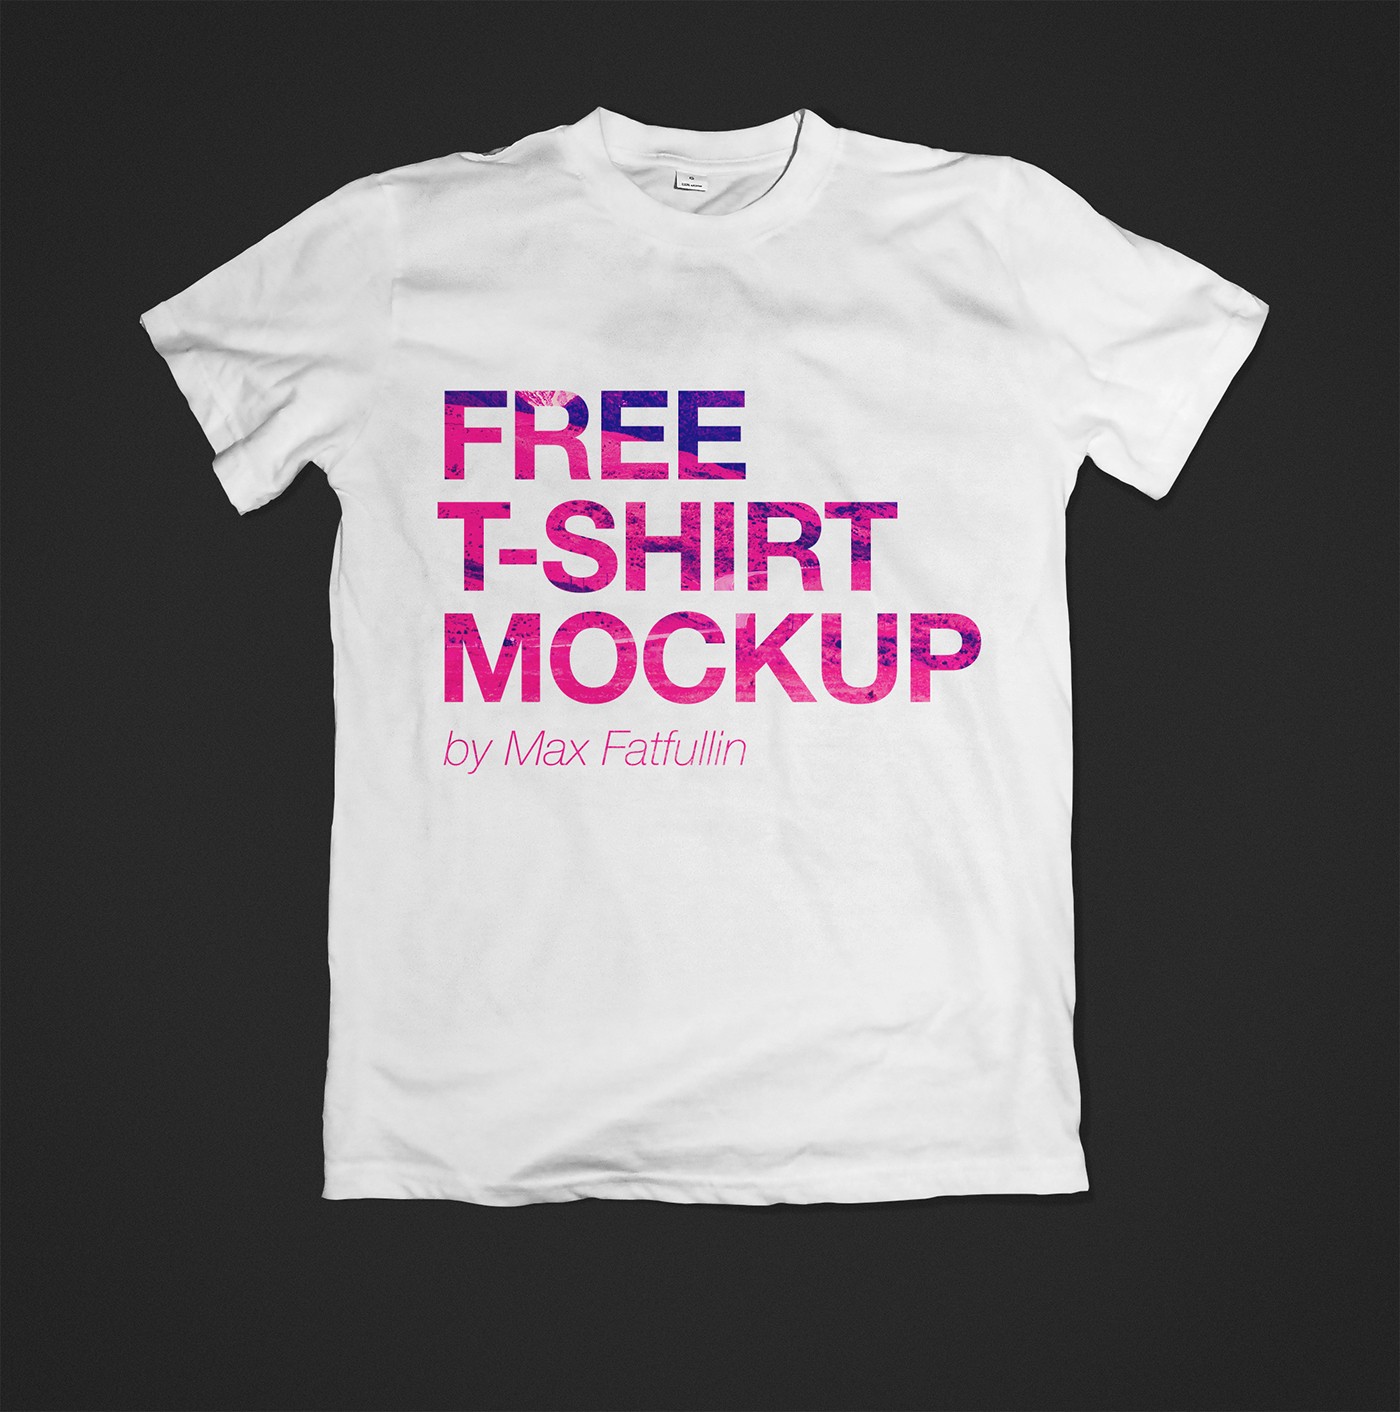 Shirt Mockup Psd Ukran Agdiffusion Com Tshirt Template Vol2 Free Download